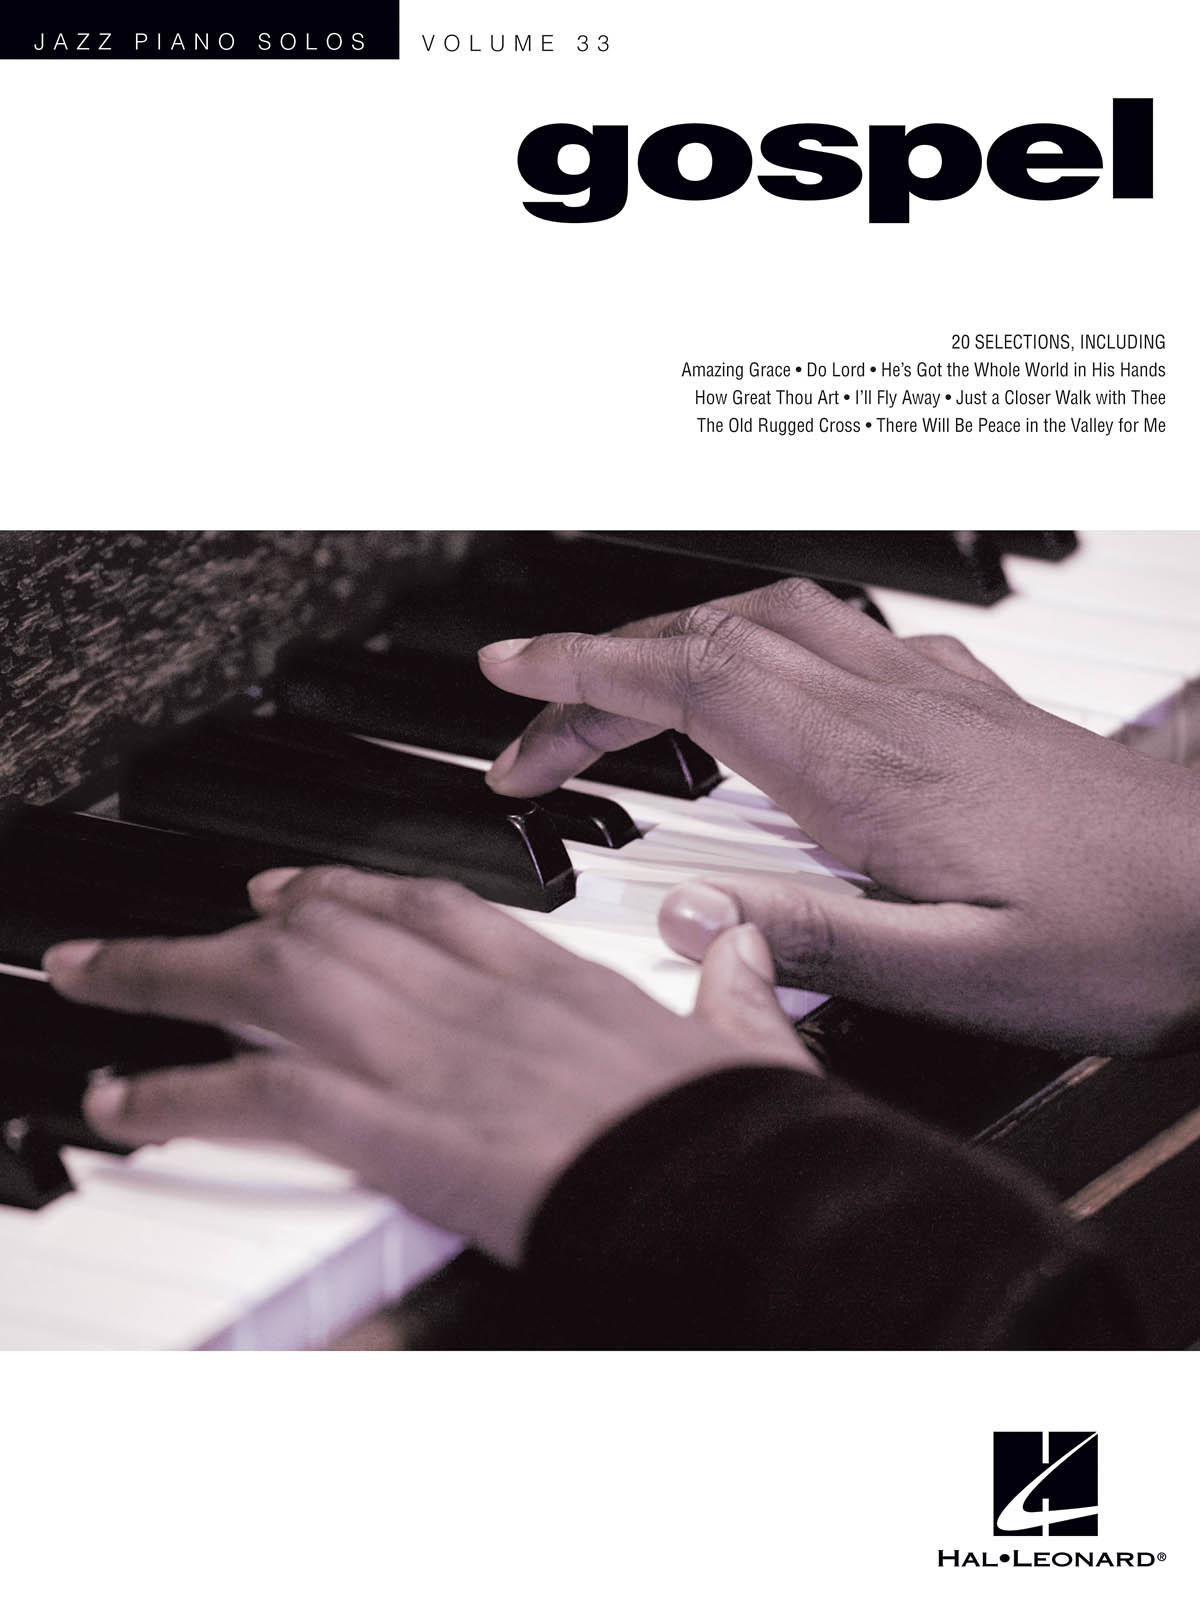 Jazz piano solos Vol 33: Gospel